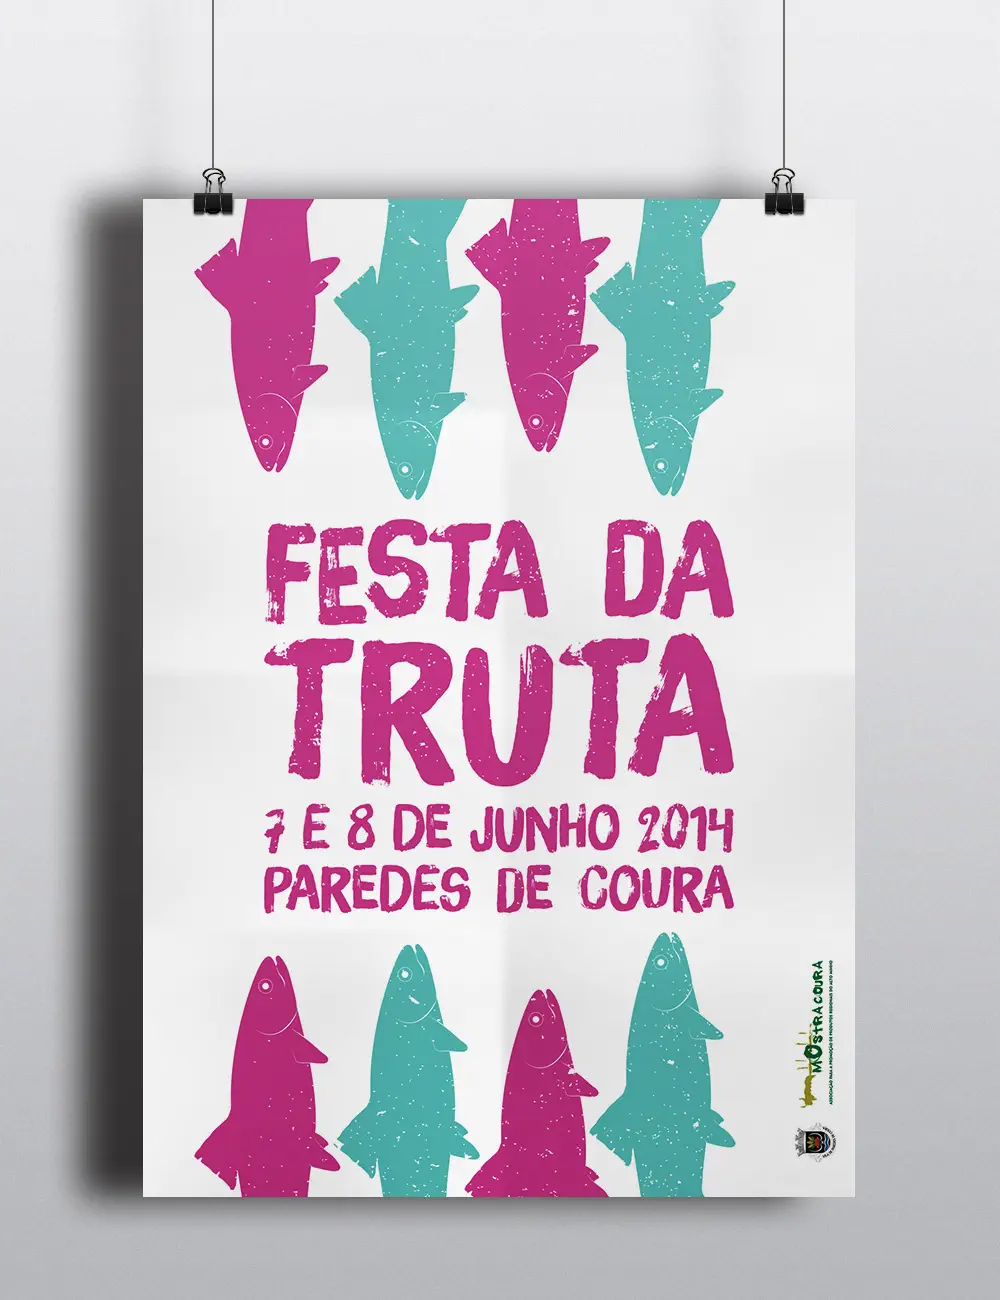 Event poster for Câmara Municial de Paredes de Coura